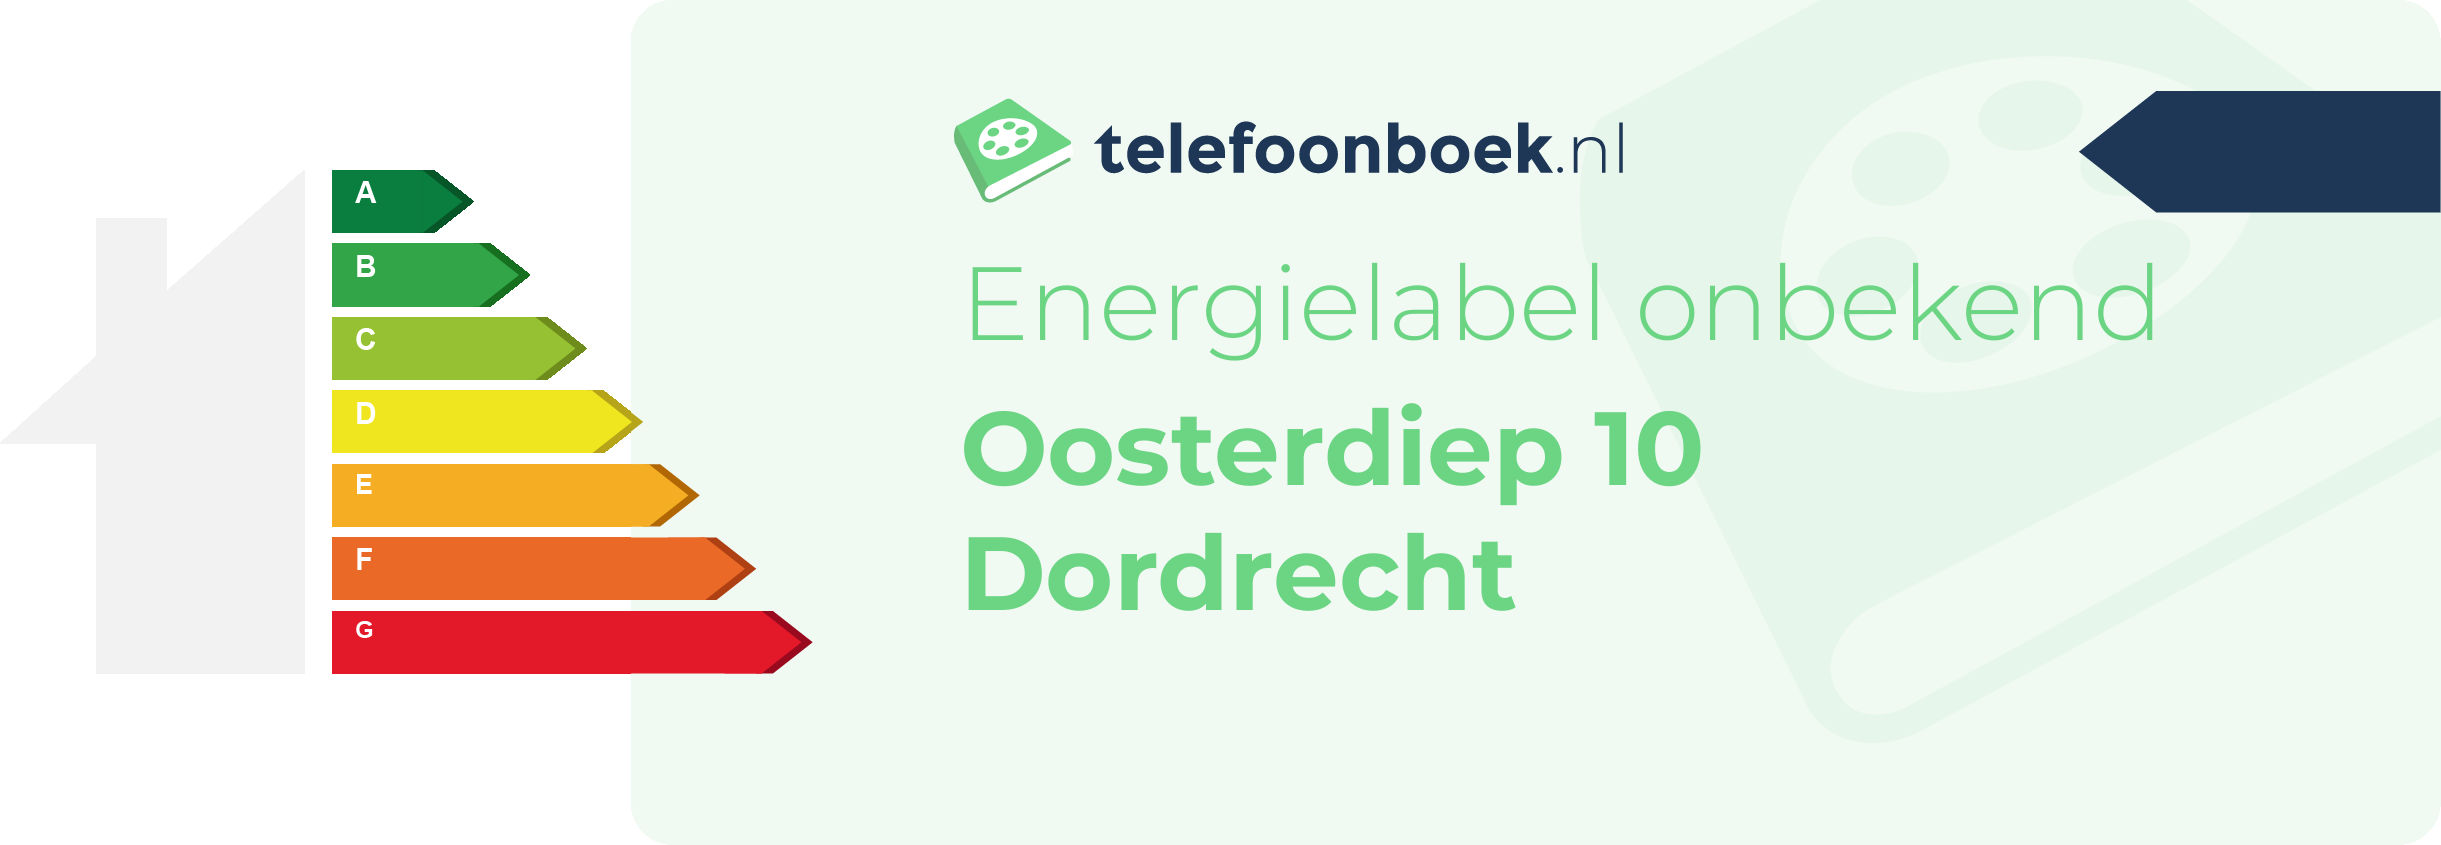 Energielabel Oosterdiep 10 Dordrecht